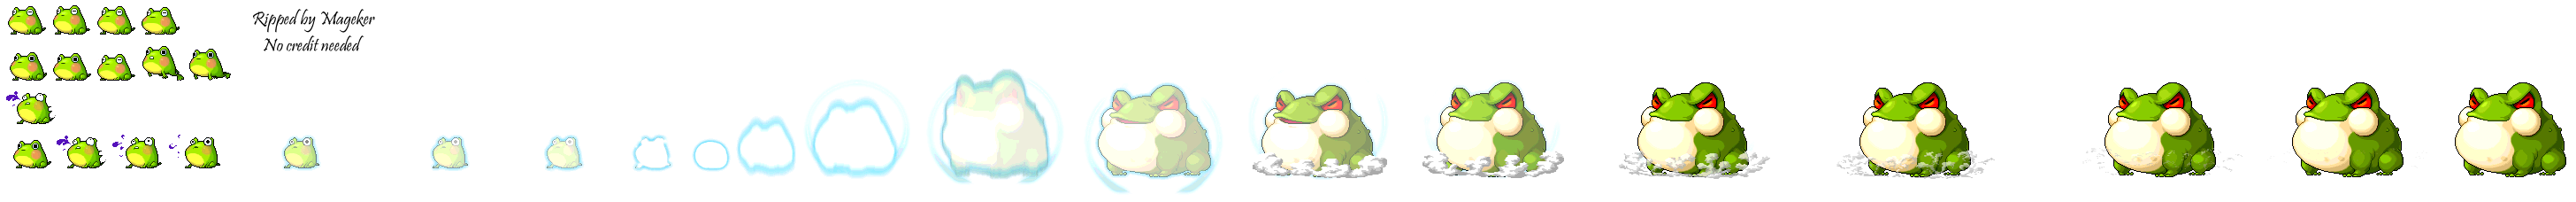 MapleStory - Frog (Halloween Monster)